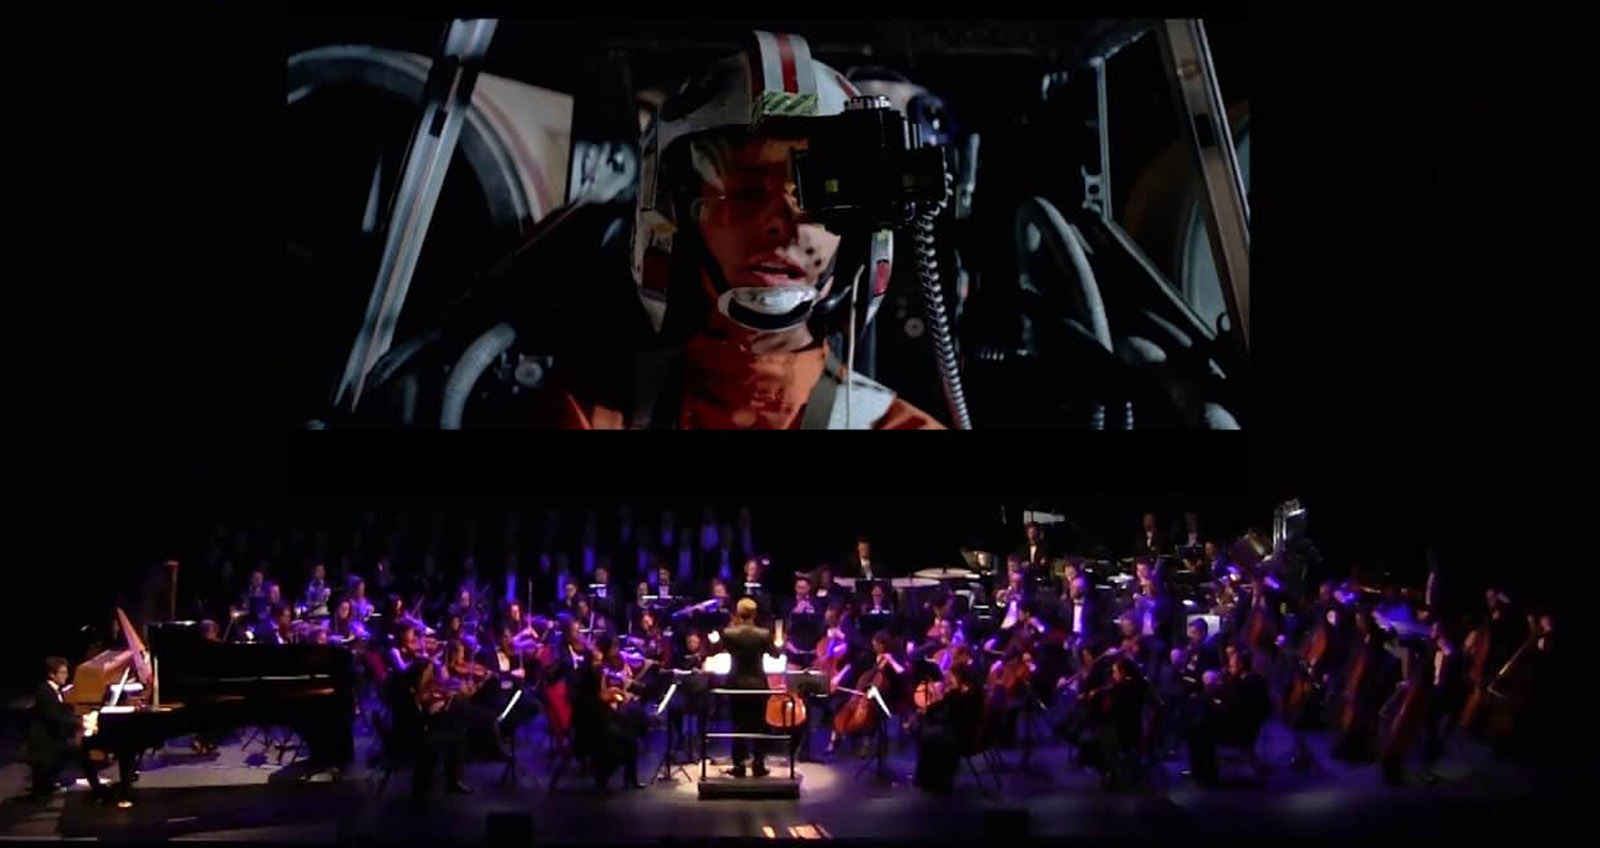 STAR WARS: al Teatro degli Arcimboldi il film con orchestra dal vivo | YOUparti